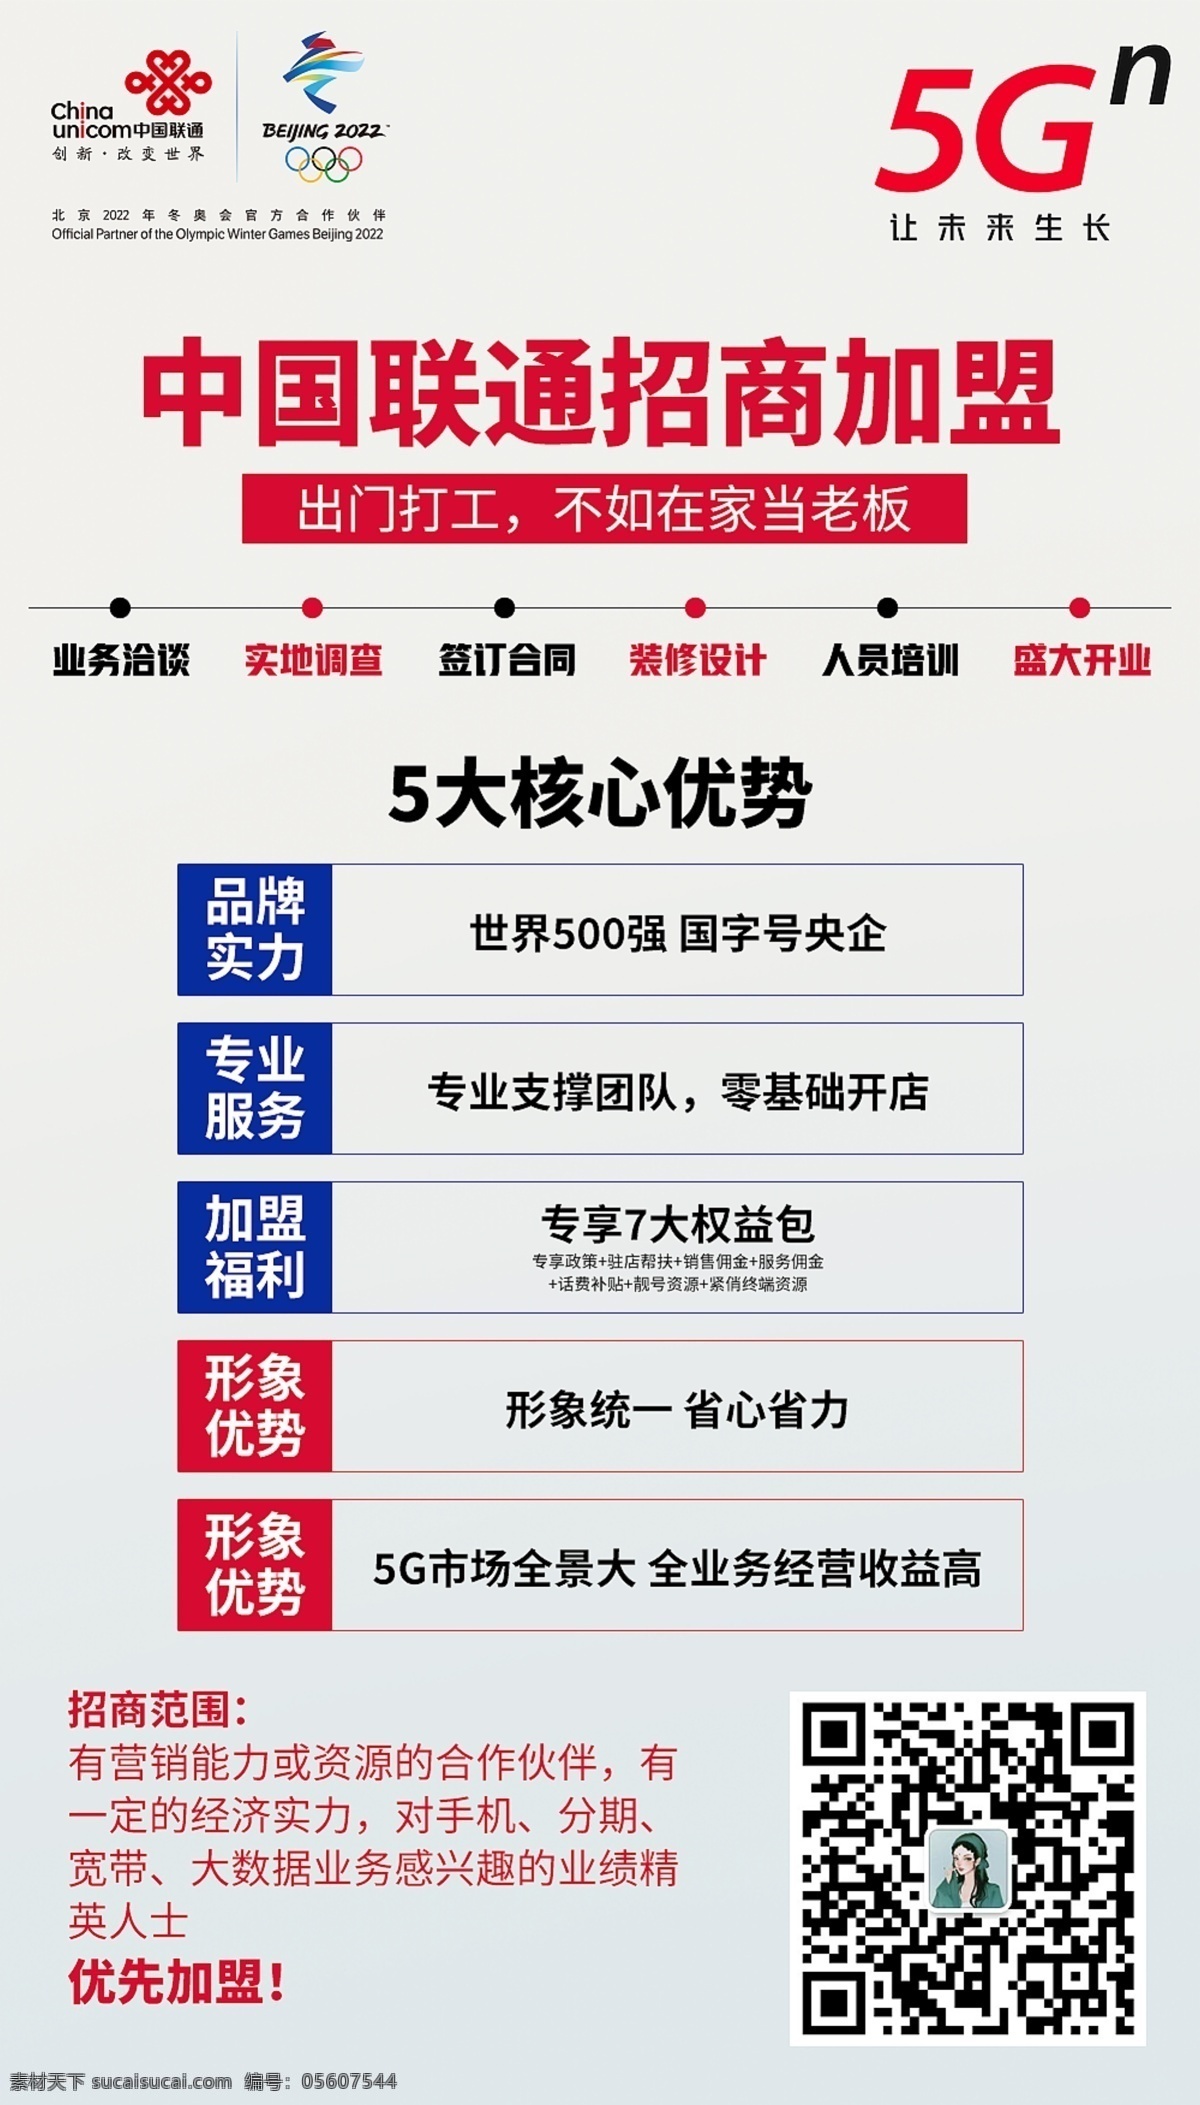 中国联通 招商 加盟 红色 5g 中国 联通 灰色 排版 核心 序号 5大 分层